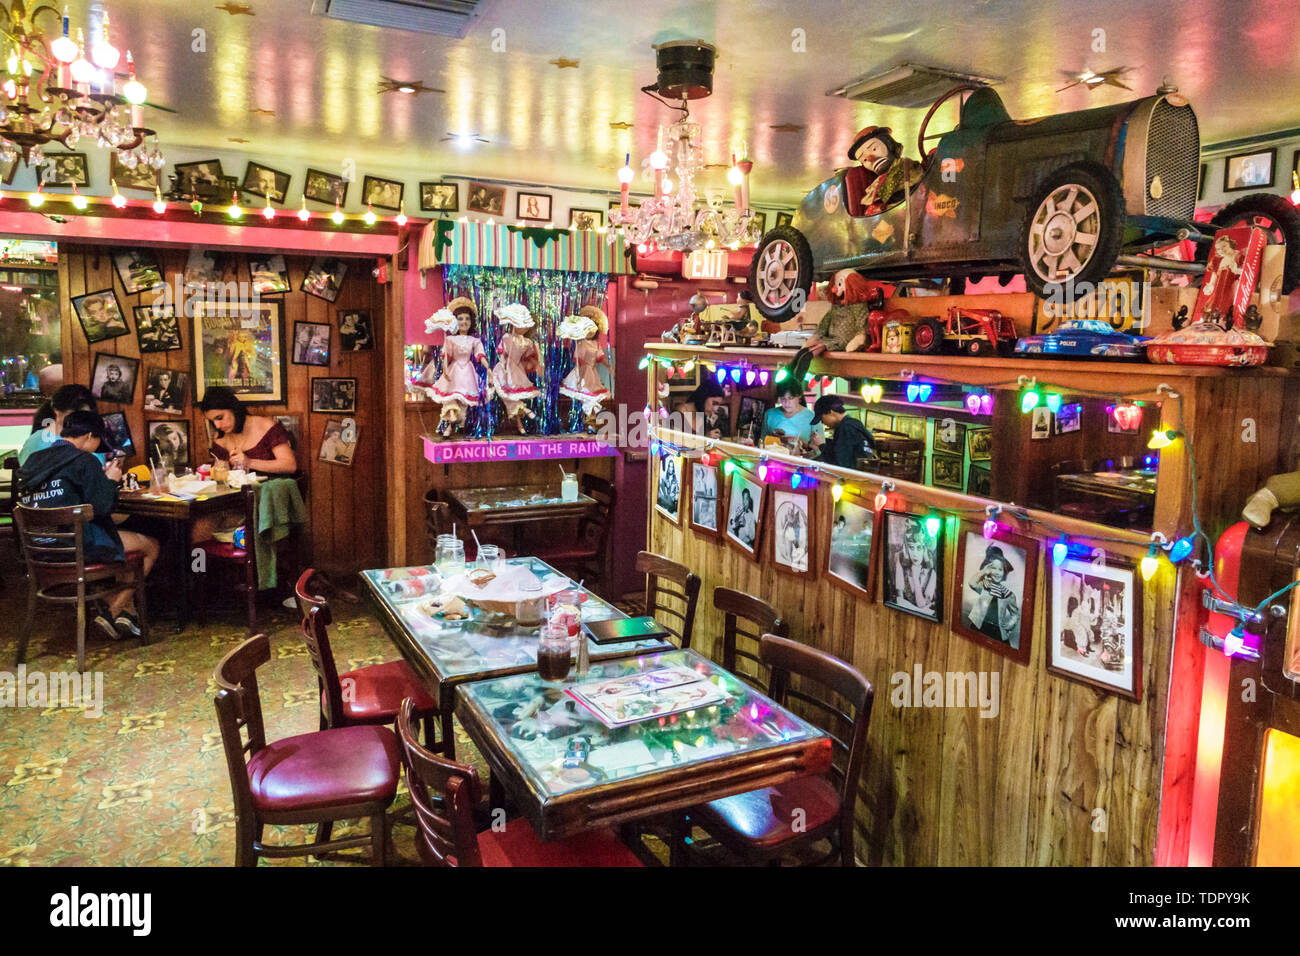 Captiva Island Florida, Bubble Room, multi-themed, restaurante restaurantes comida comedor cafés, interior, whimsical kitschy decoración, fotos vintage t Foto de stock